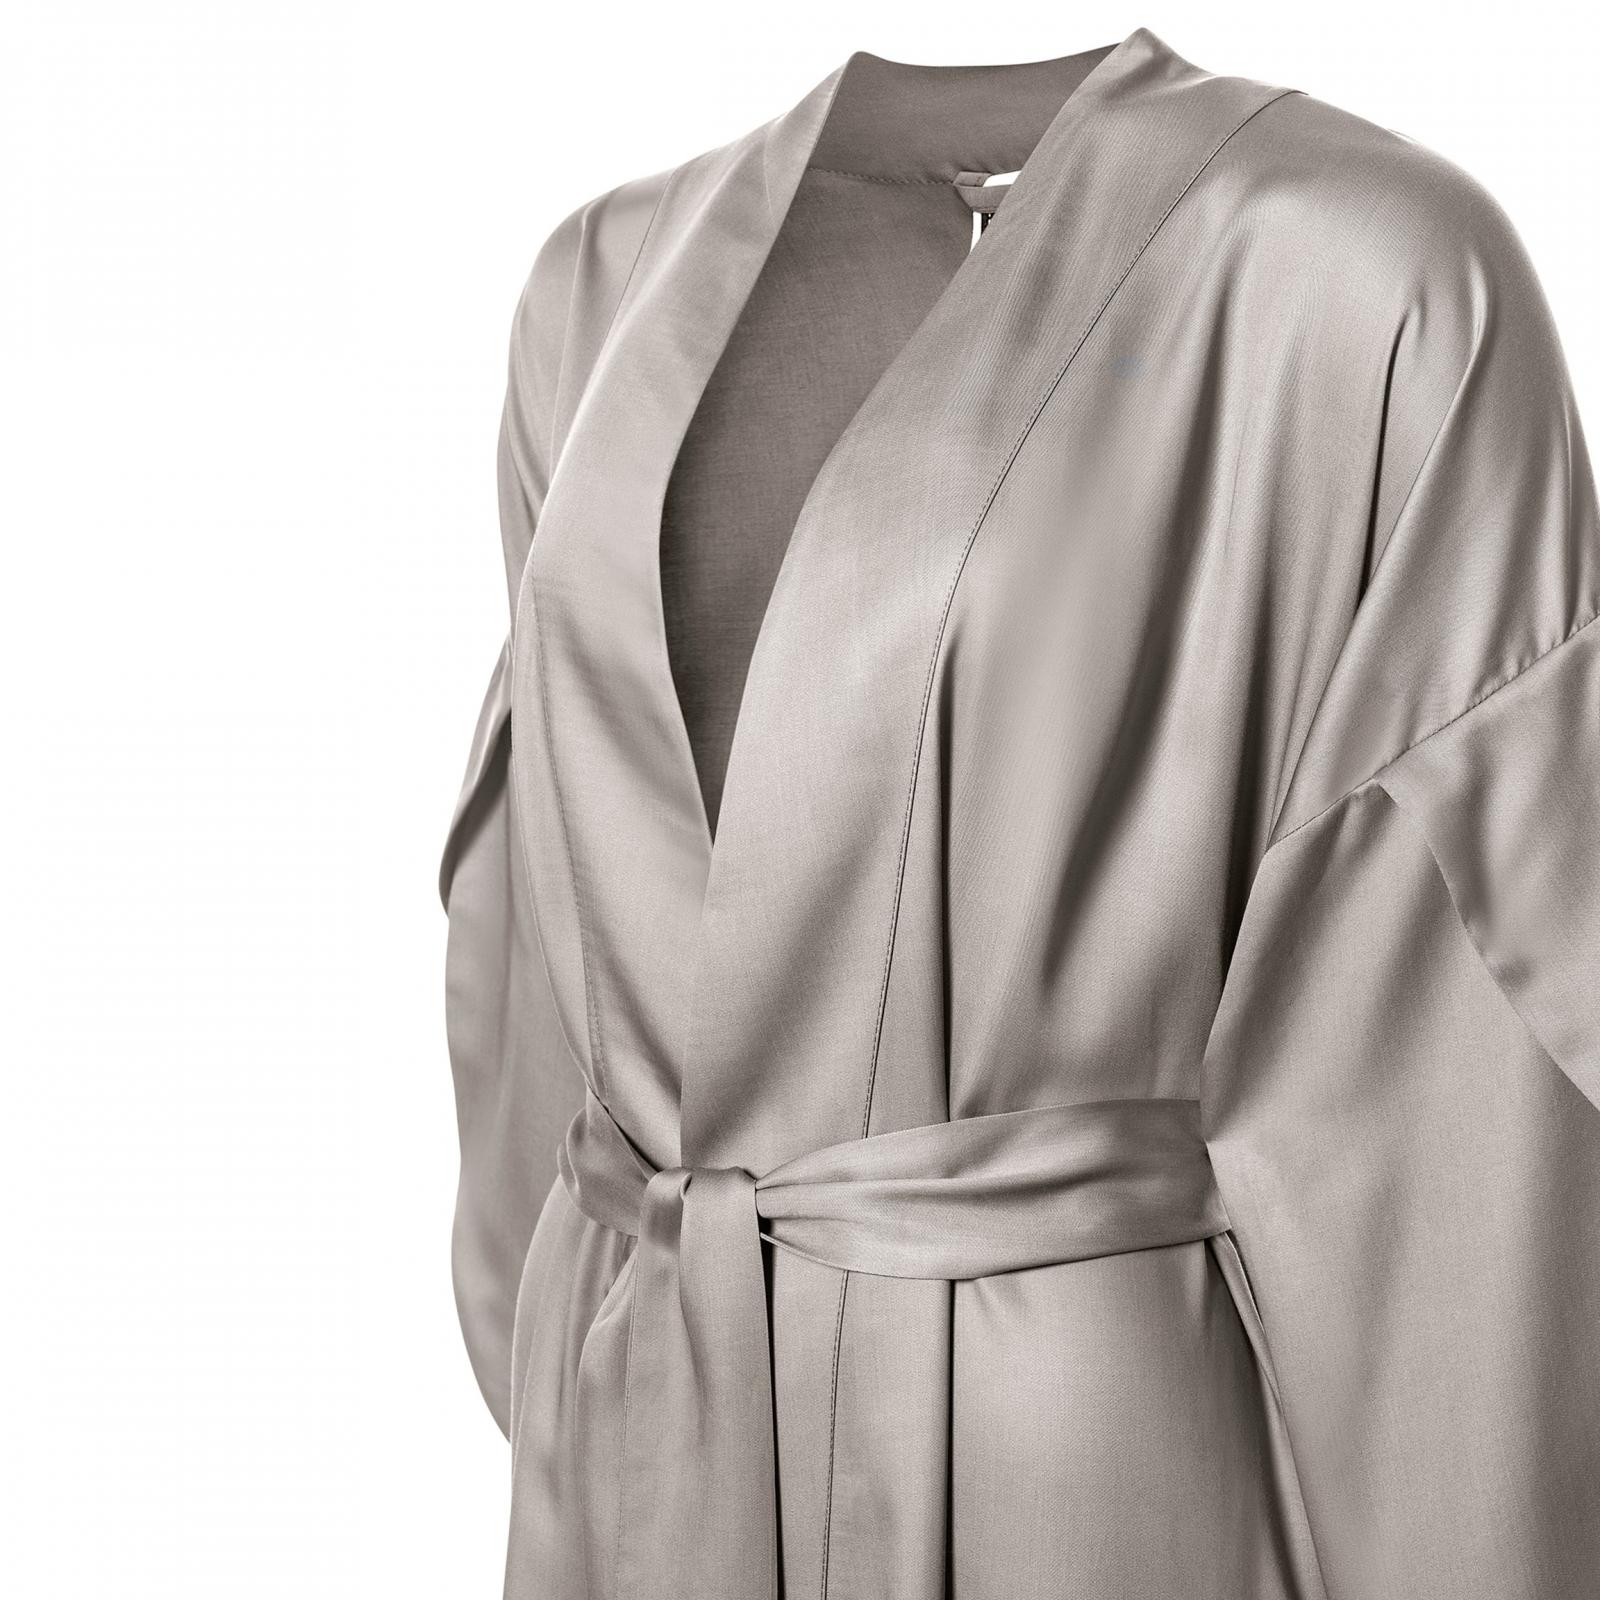 фото Халат togas наоми короткий светло-коричневый кимоно m-46